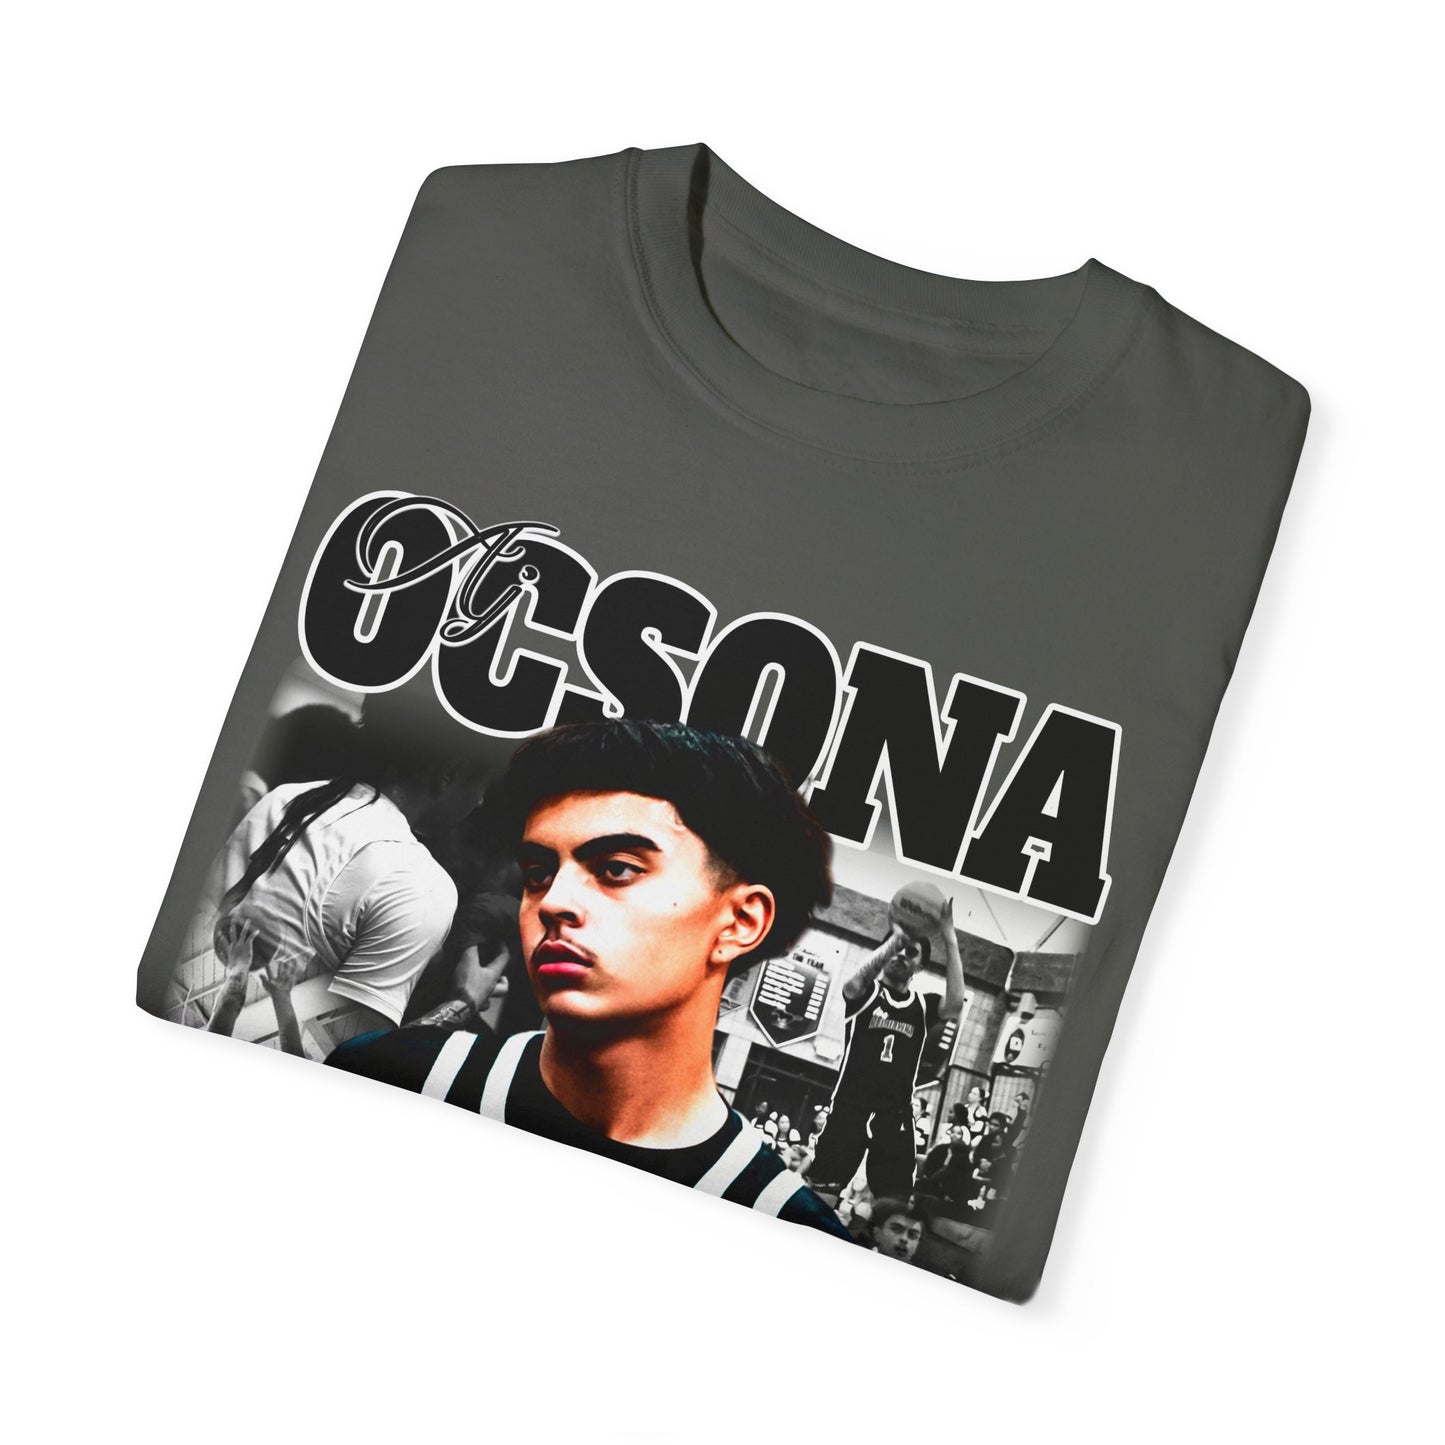 AJ Ocsona Graphic T-shirt